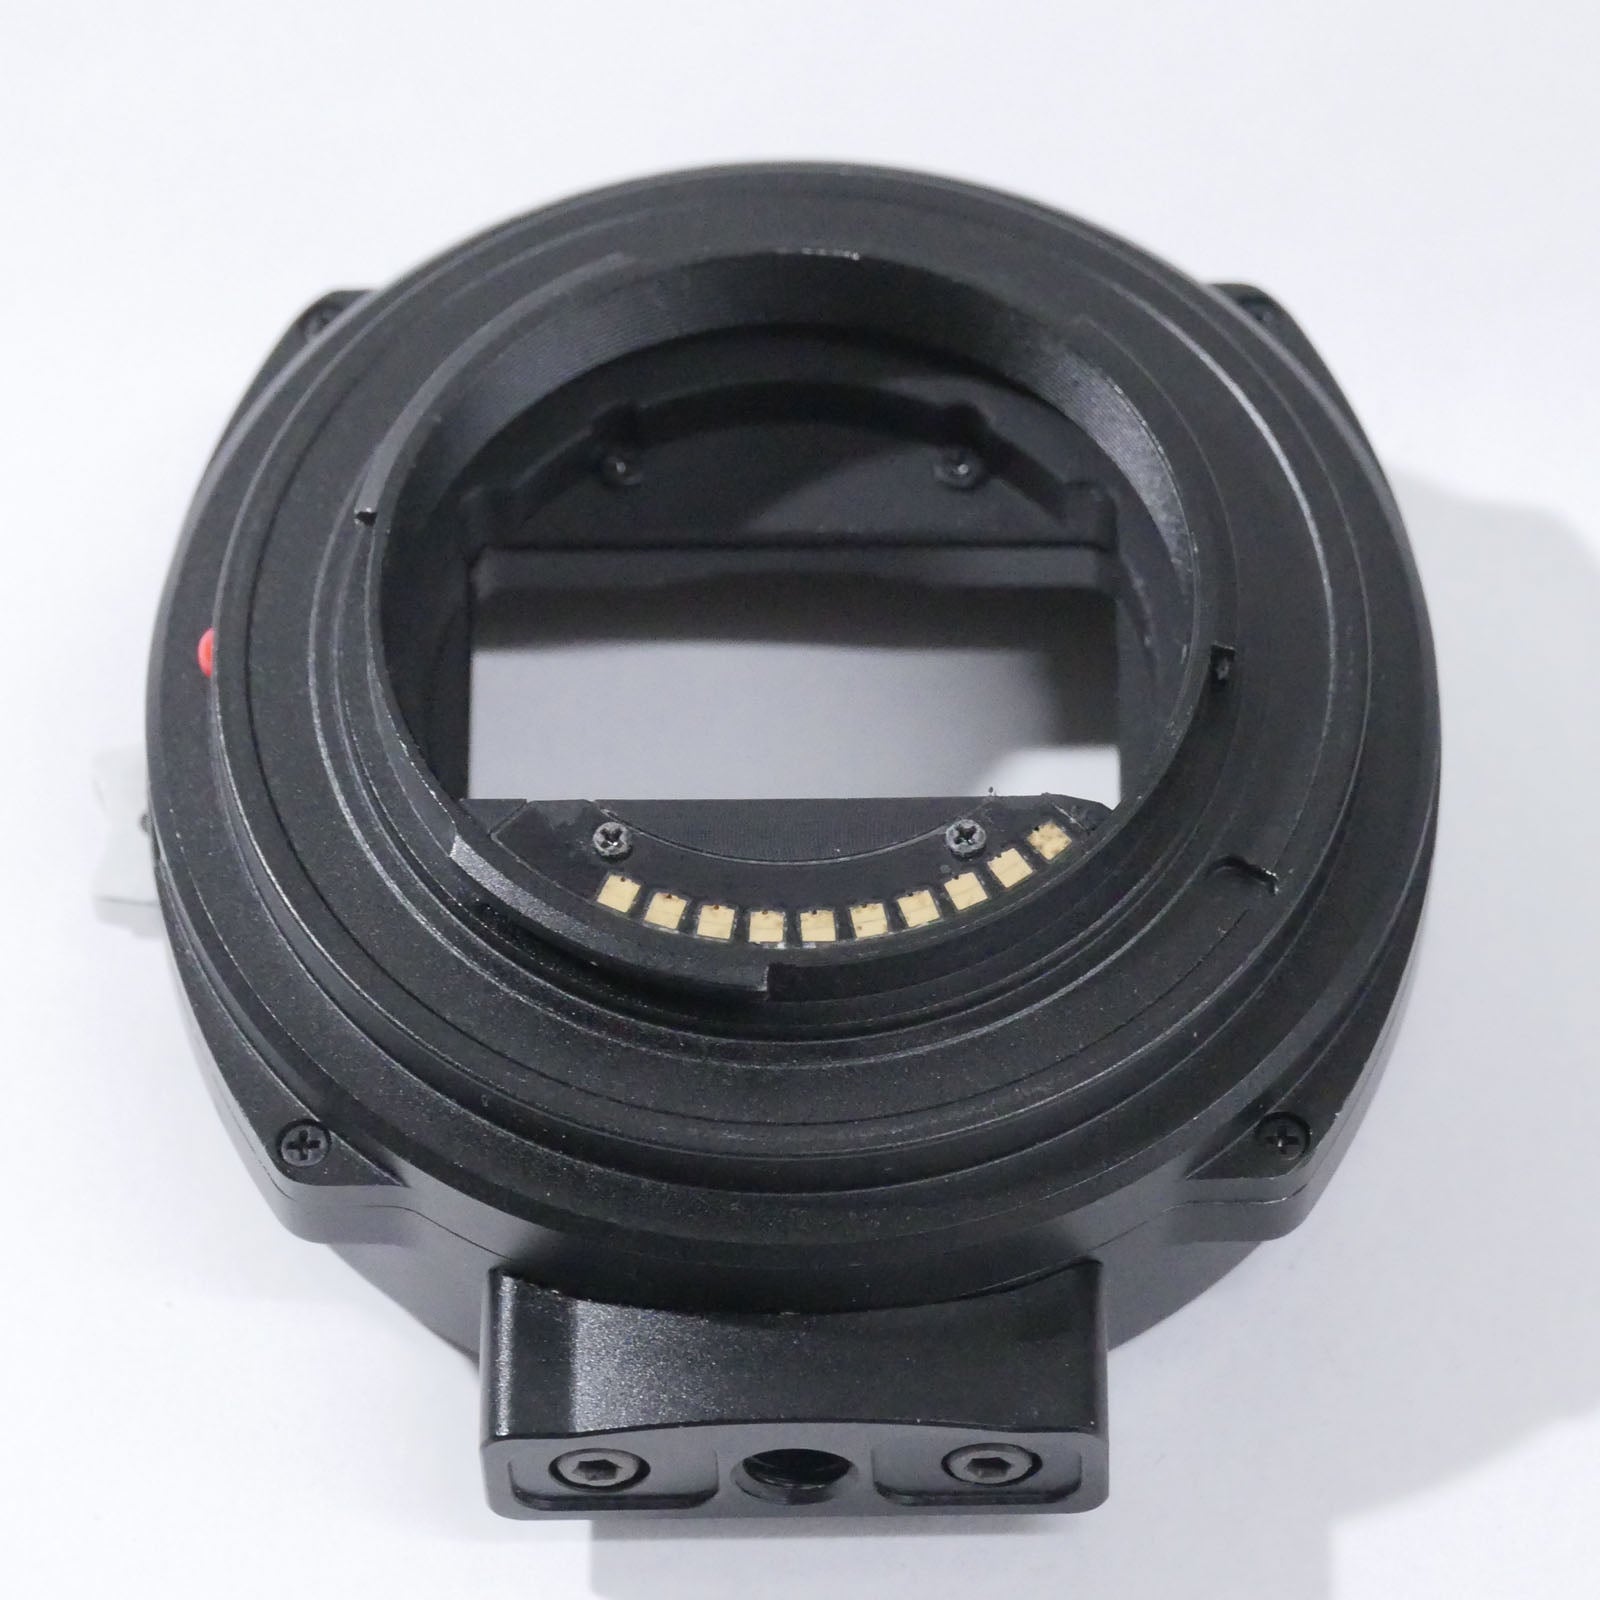 KIPON(キポン) レンズマウントアダプター EF-S/E AF 中古品